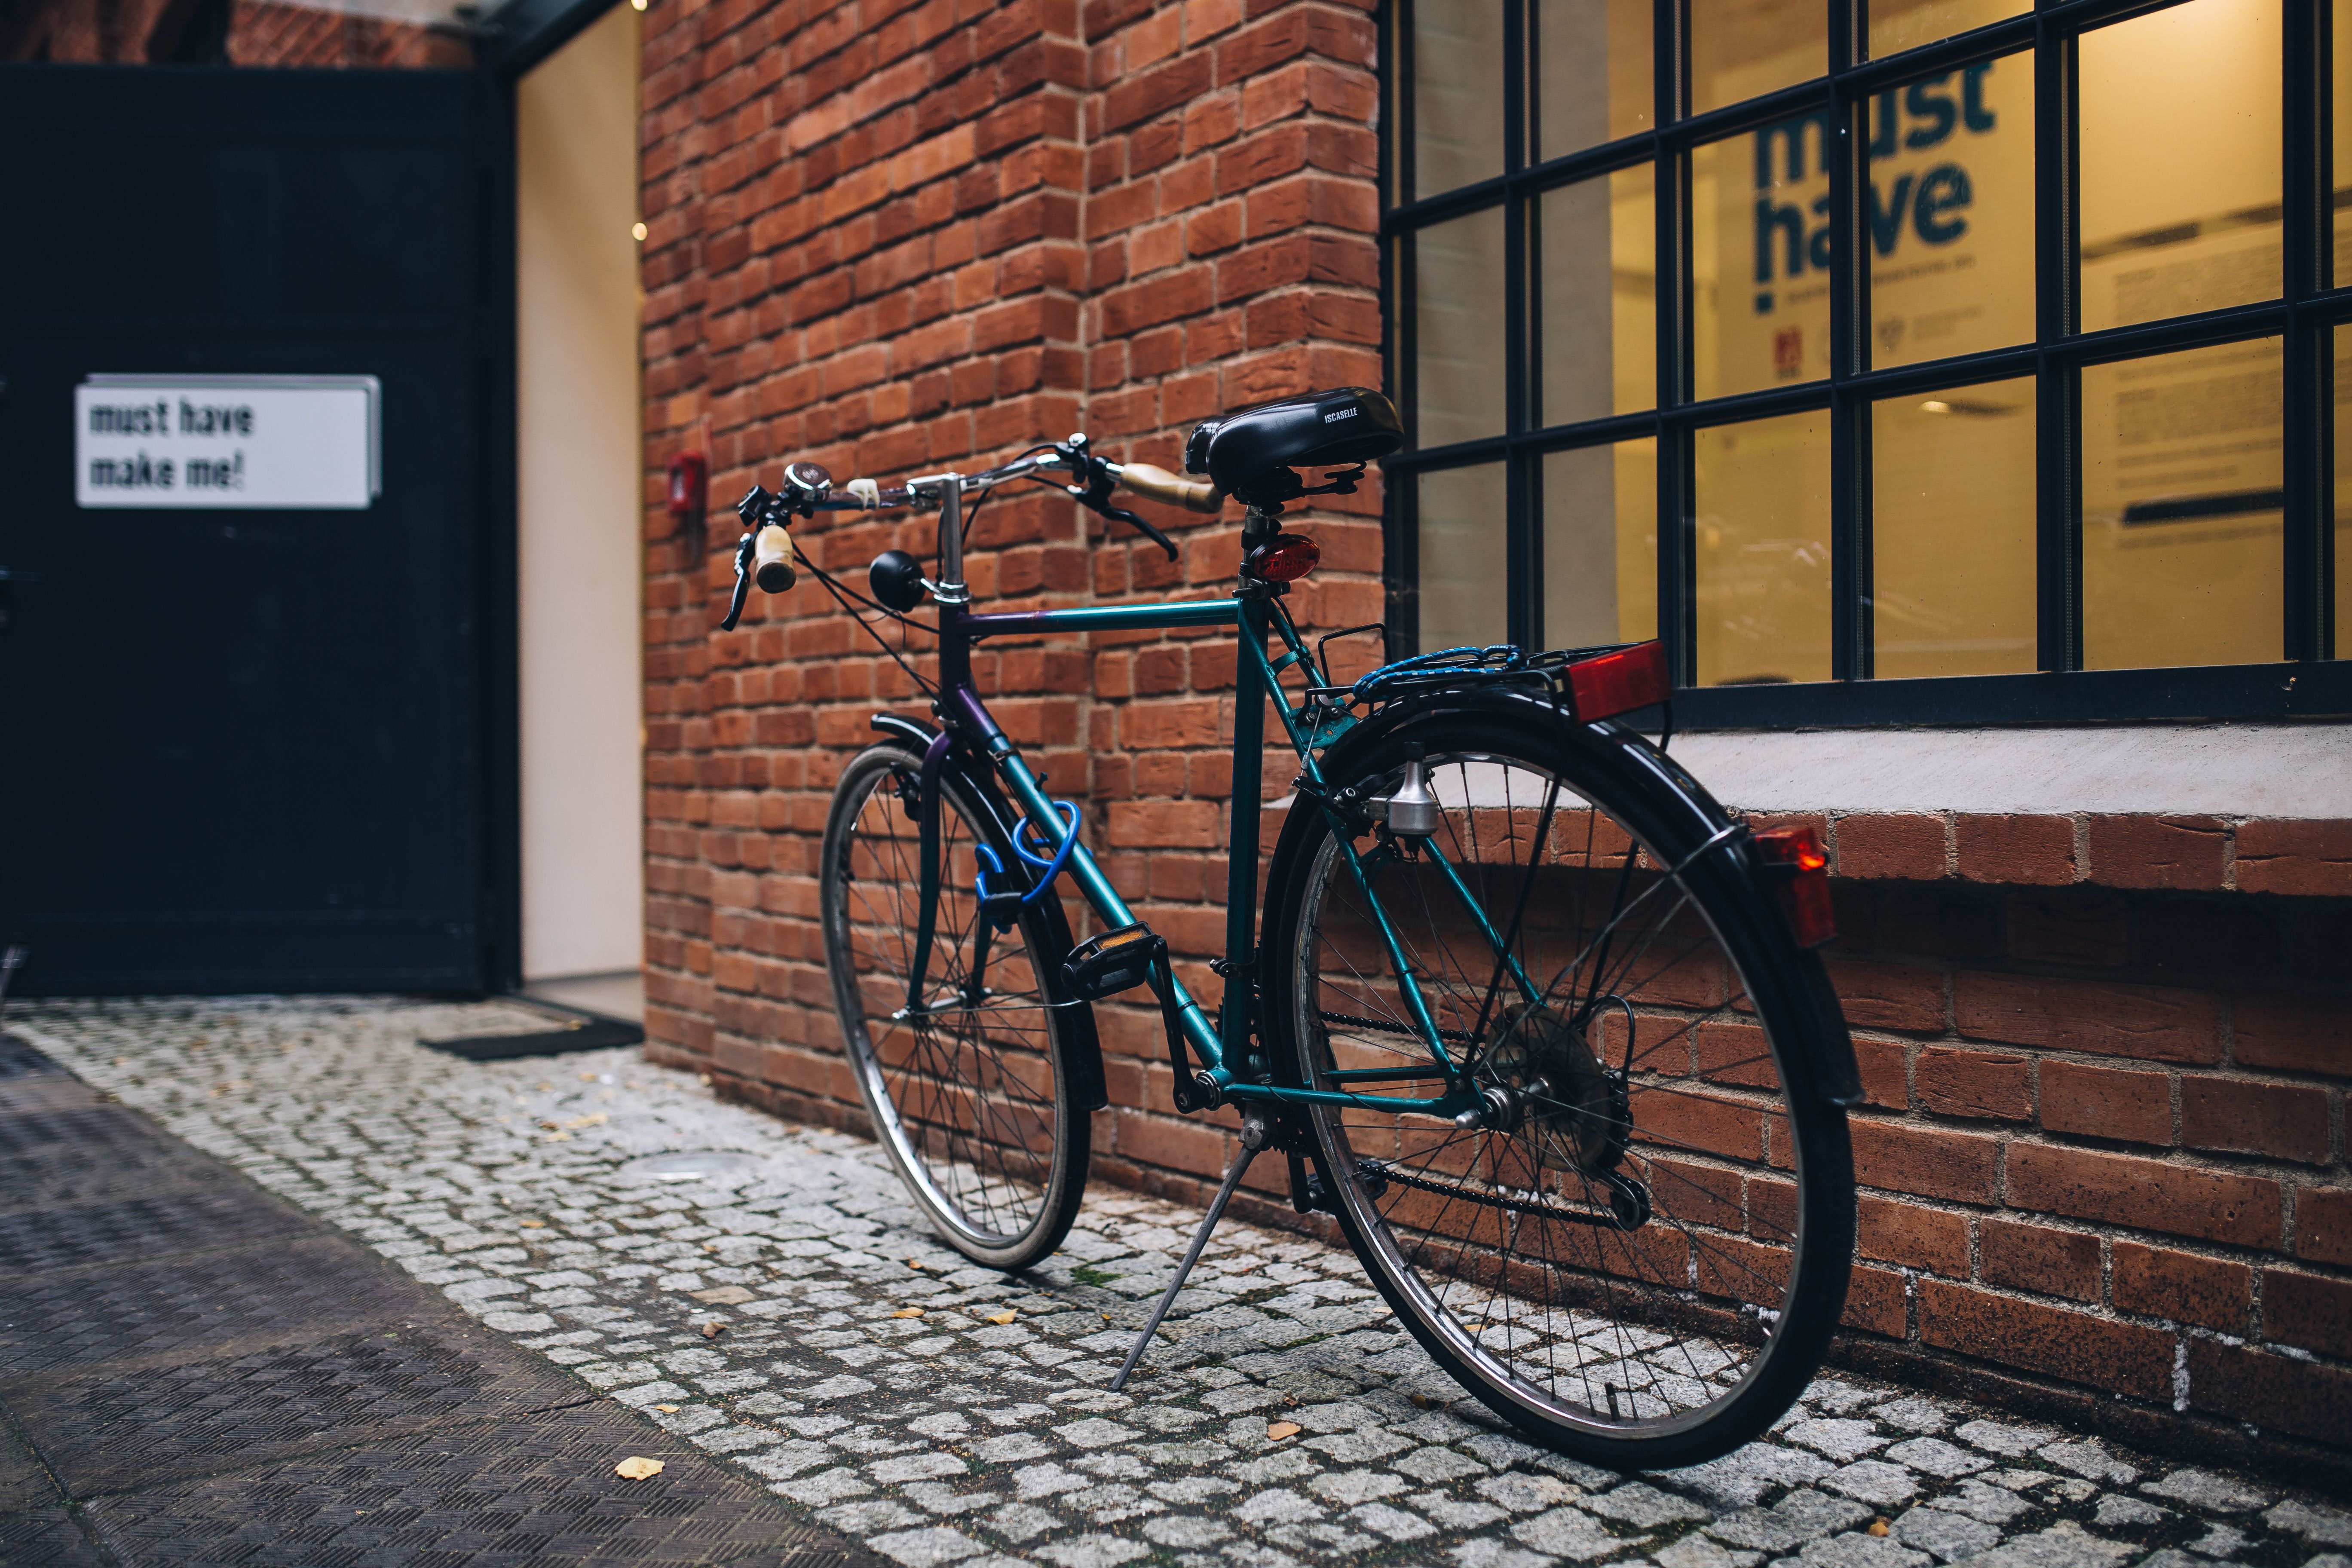 Miglior cavalletto per manutenzione bici - Classifica con recensione, foto  e prezzi